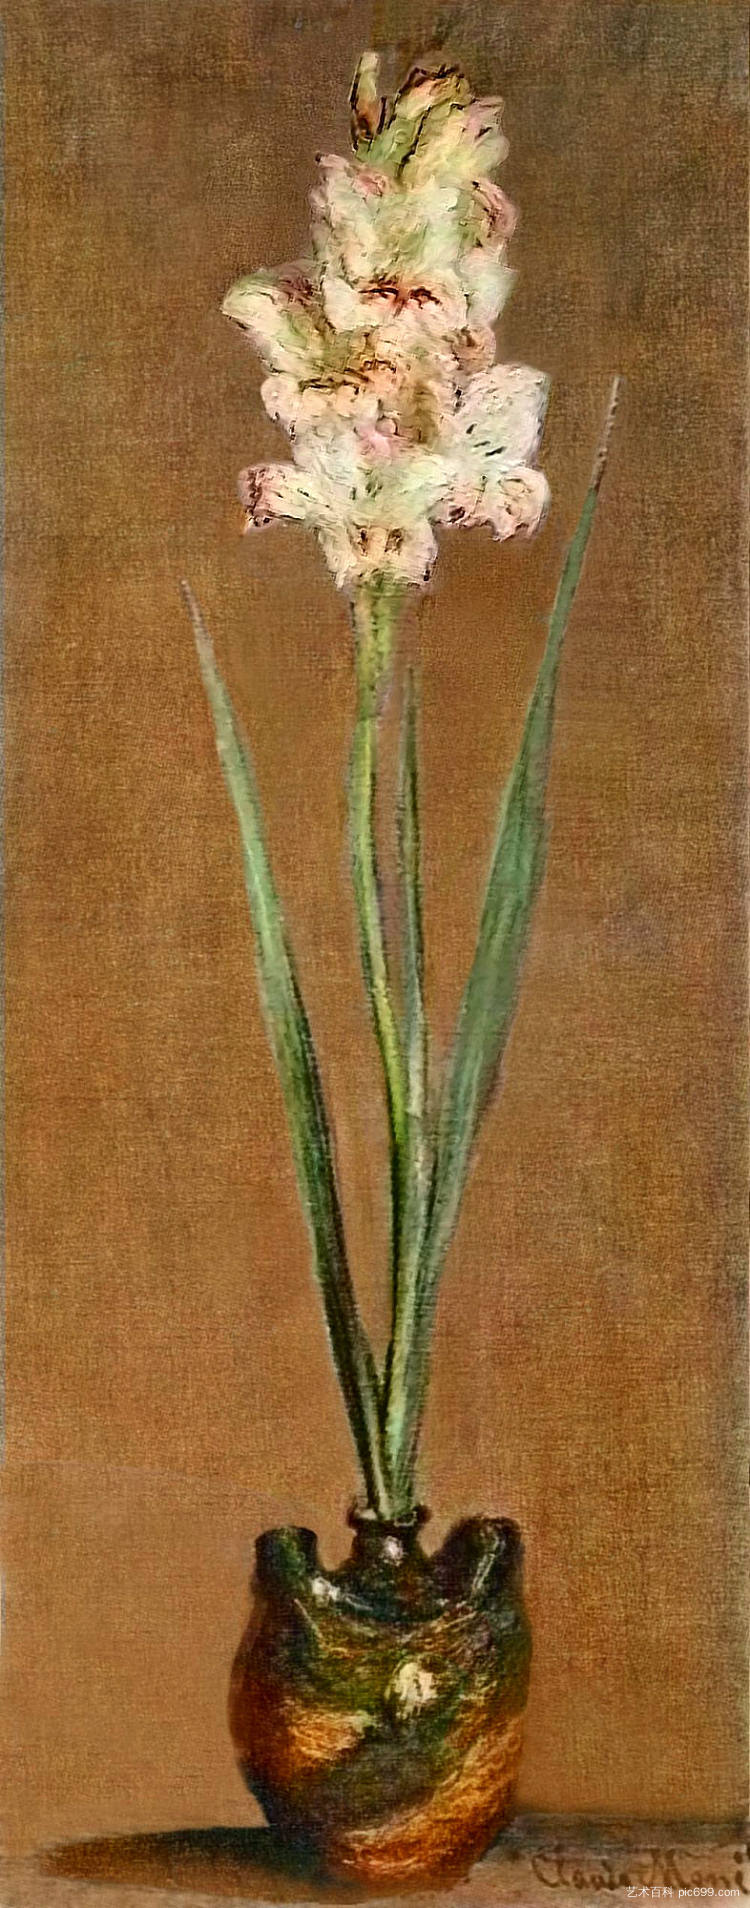 剑兰 Gladiolus (1881)，克劳德·莫奈